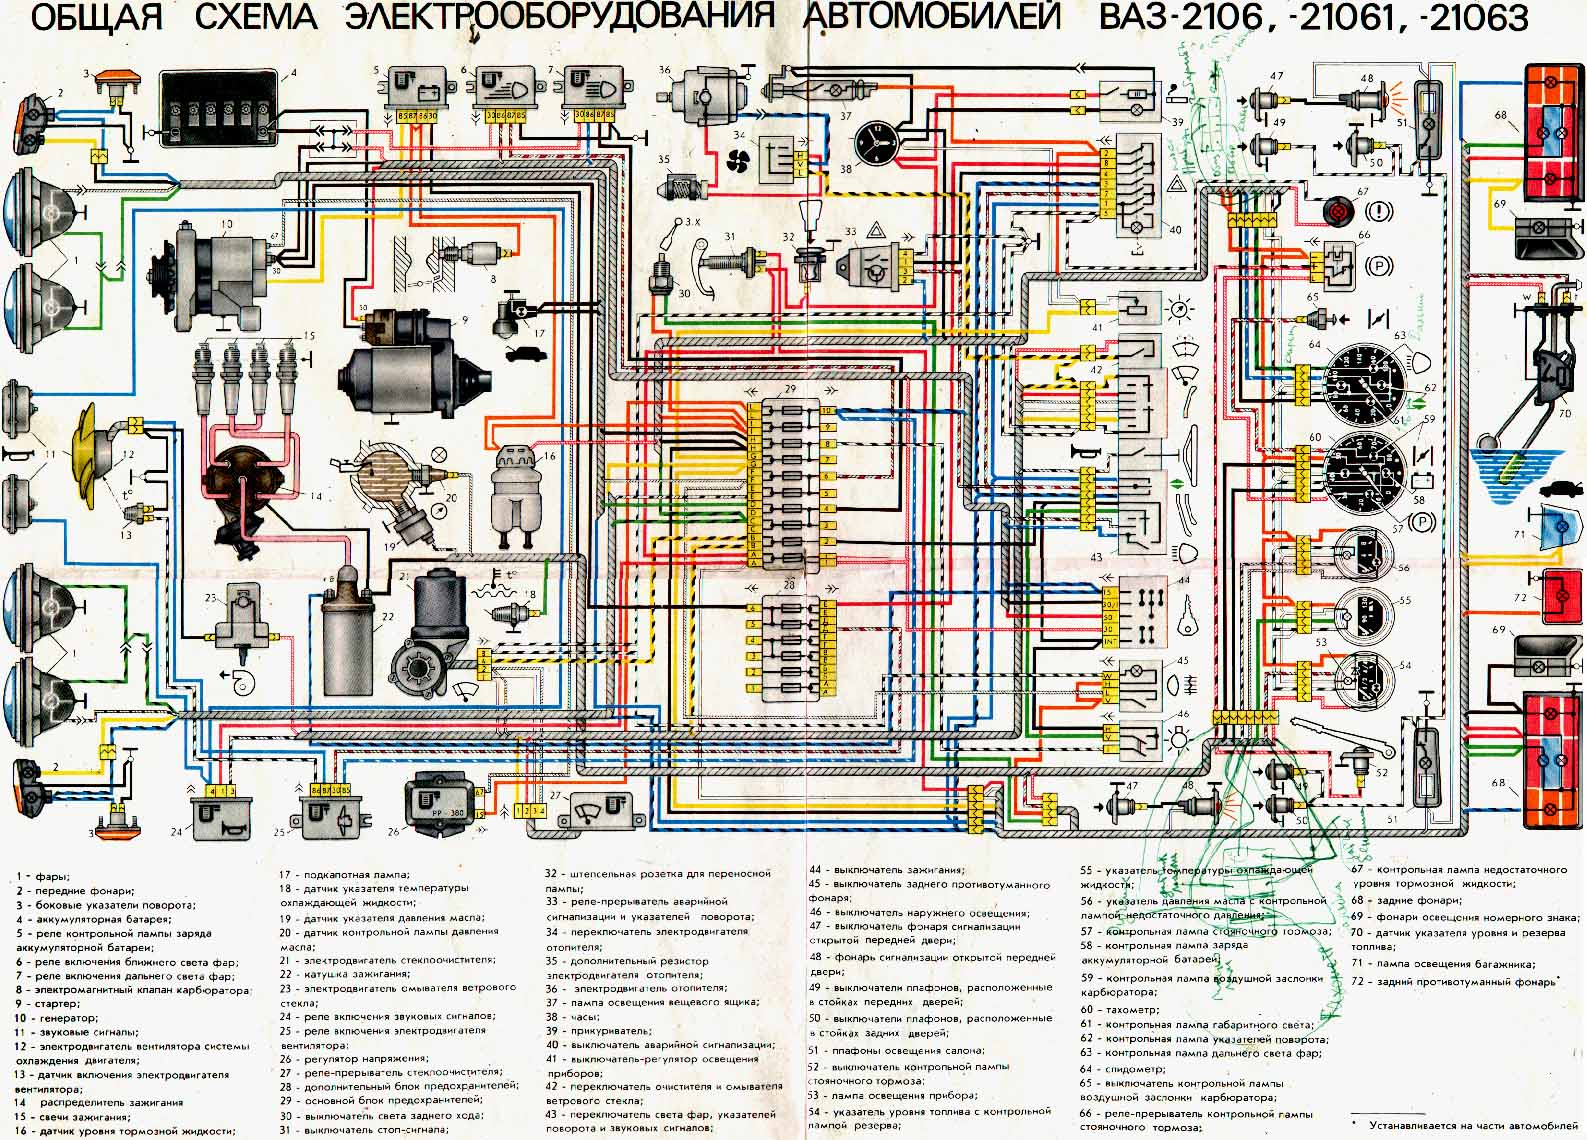 Схема электрооборудования автомобилей ВАЗ , ВАЗ , ВАЗ 